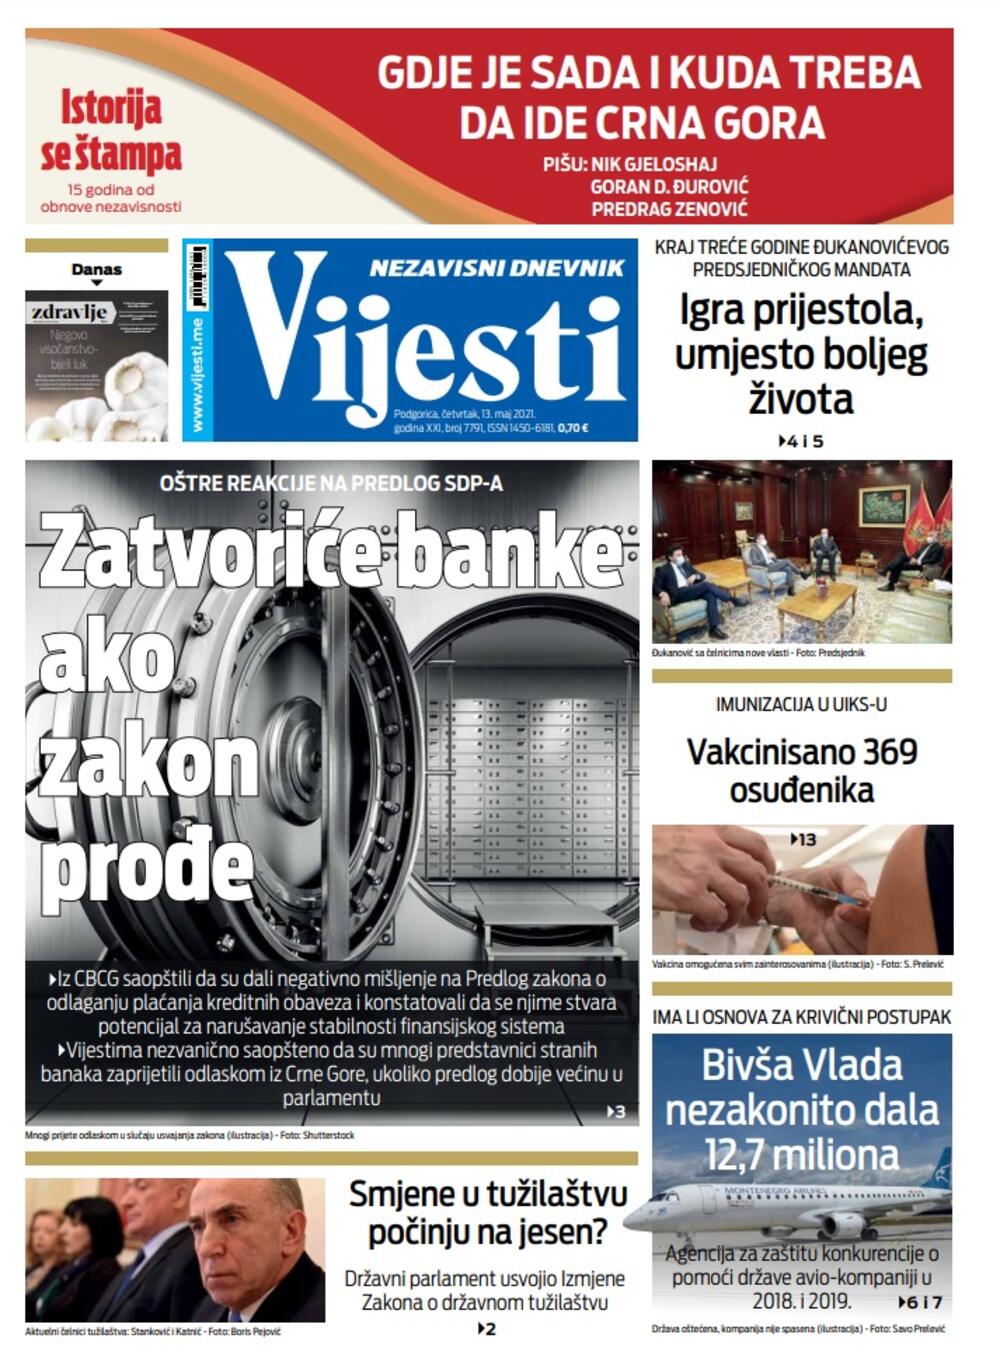 Naslovna strana "Vijesti" za četvrtak 13. maj 2021. godine, Foto: Vijesti